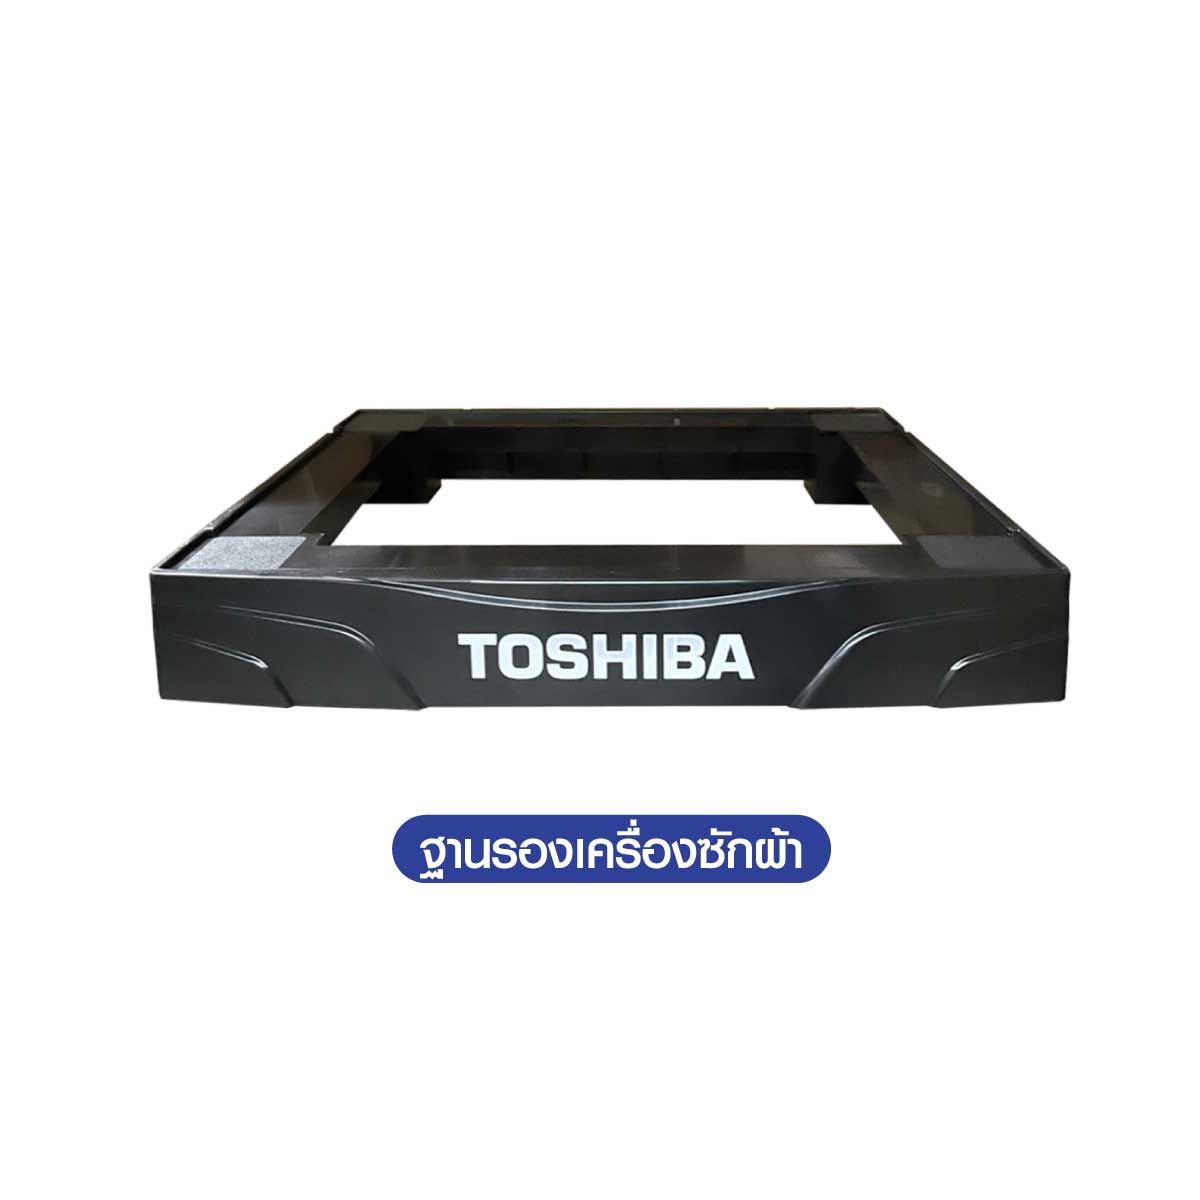 TOSHIBA เครื่องซักผ้าฝาหน้า 10.5Kg. WIFI จอสัมผัส รุ่นTW-T25BU115MWT(MG)